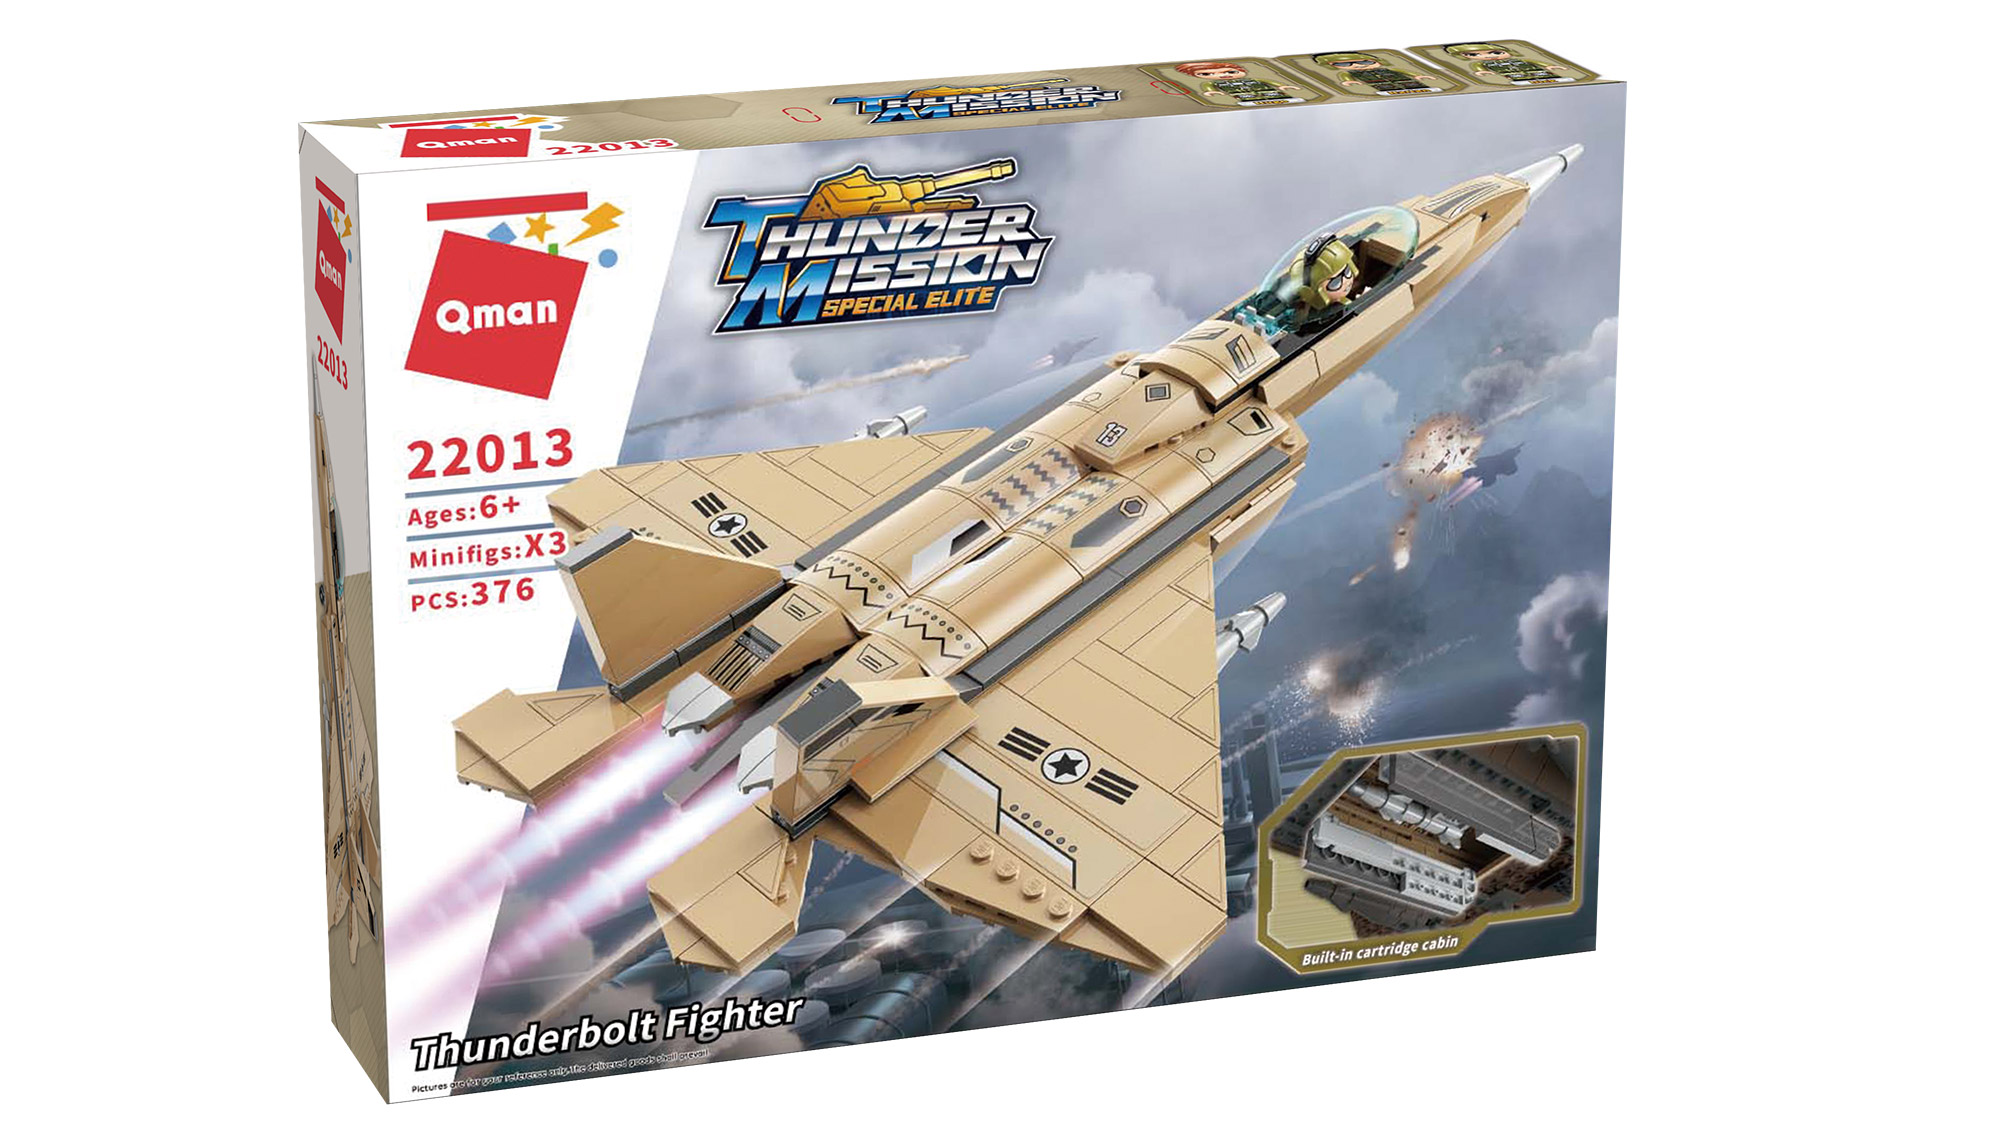 Thunderbolt Fighter